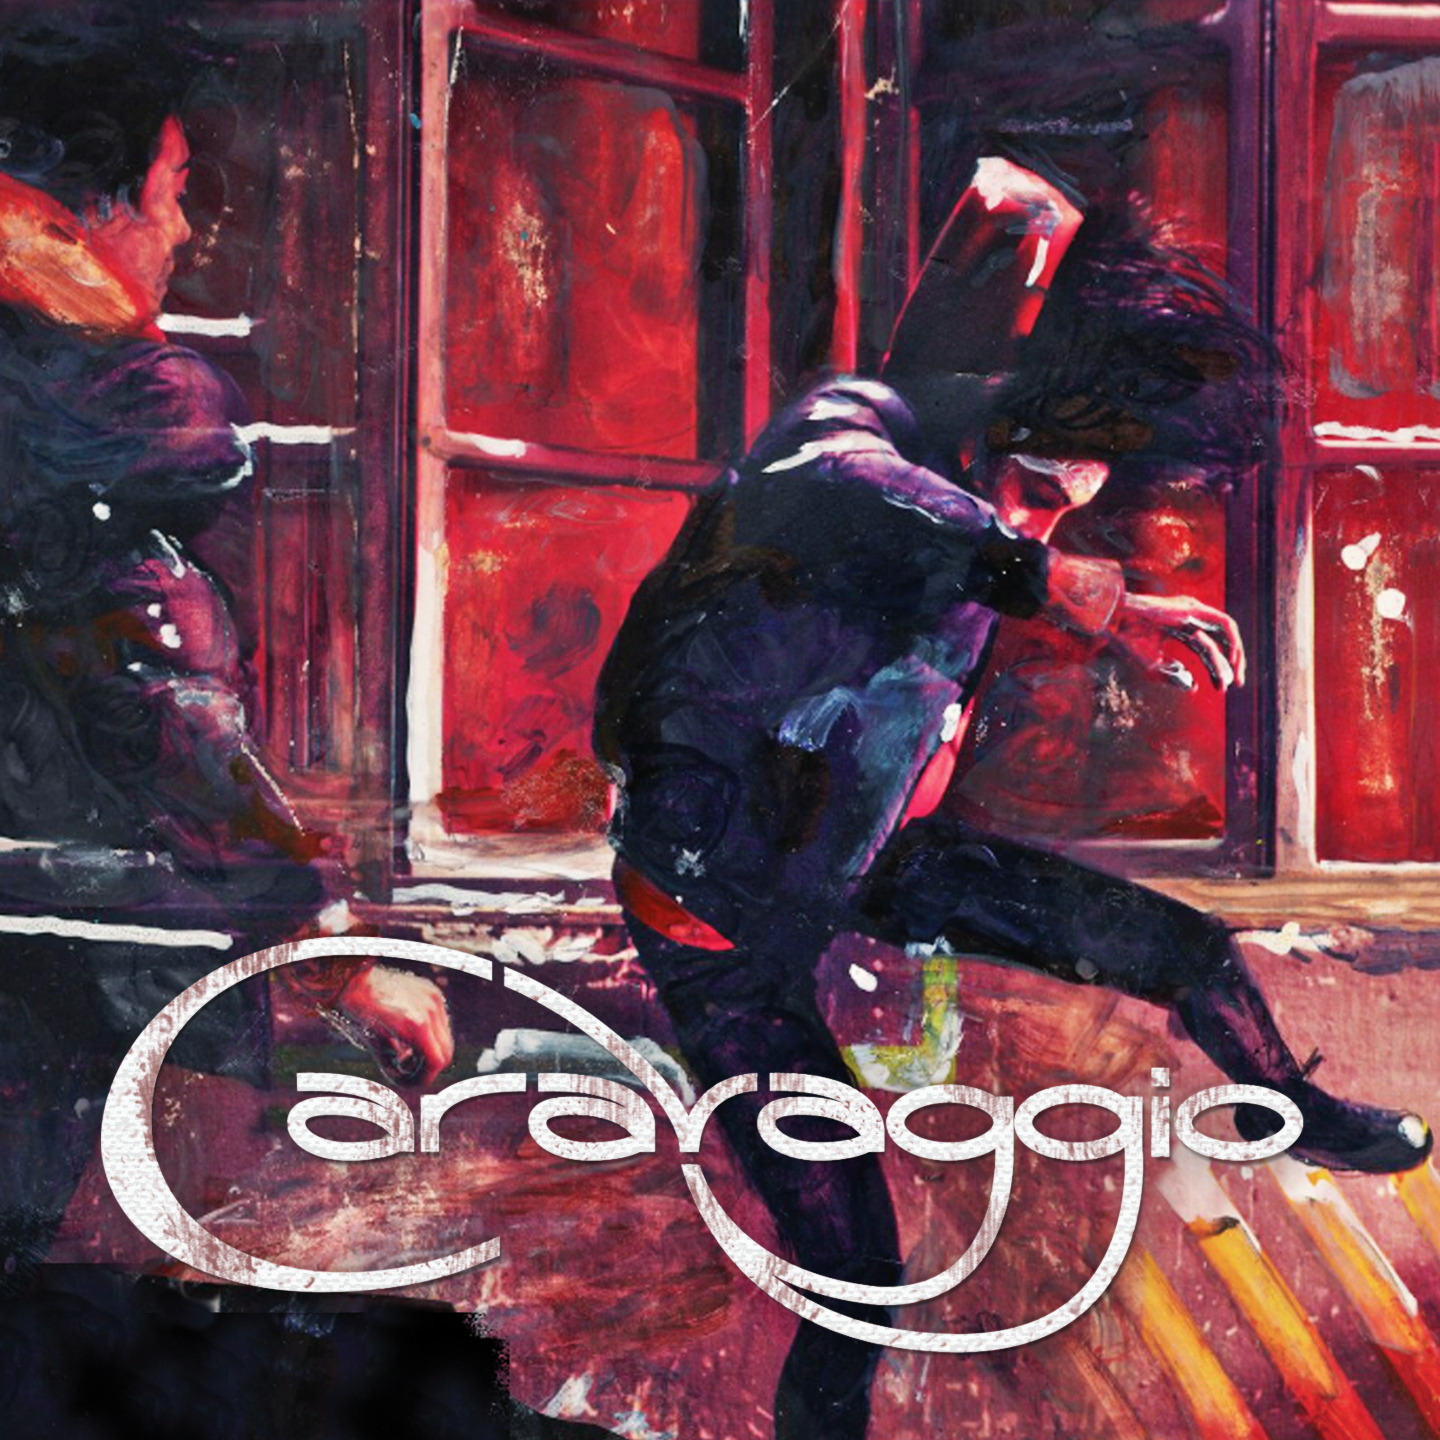 CARAVAGGIO - Caravaggio Cd Digipack